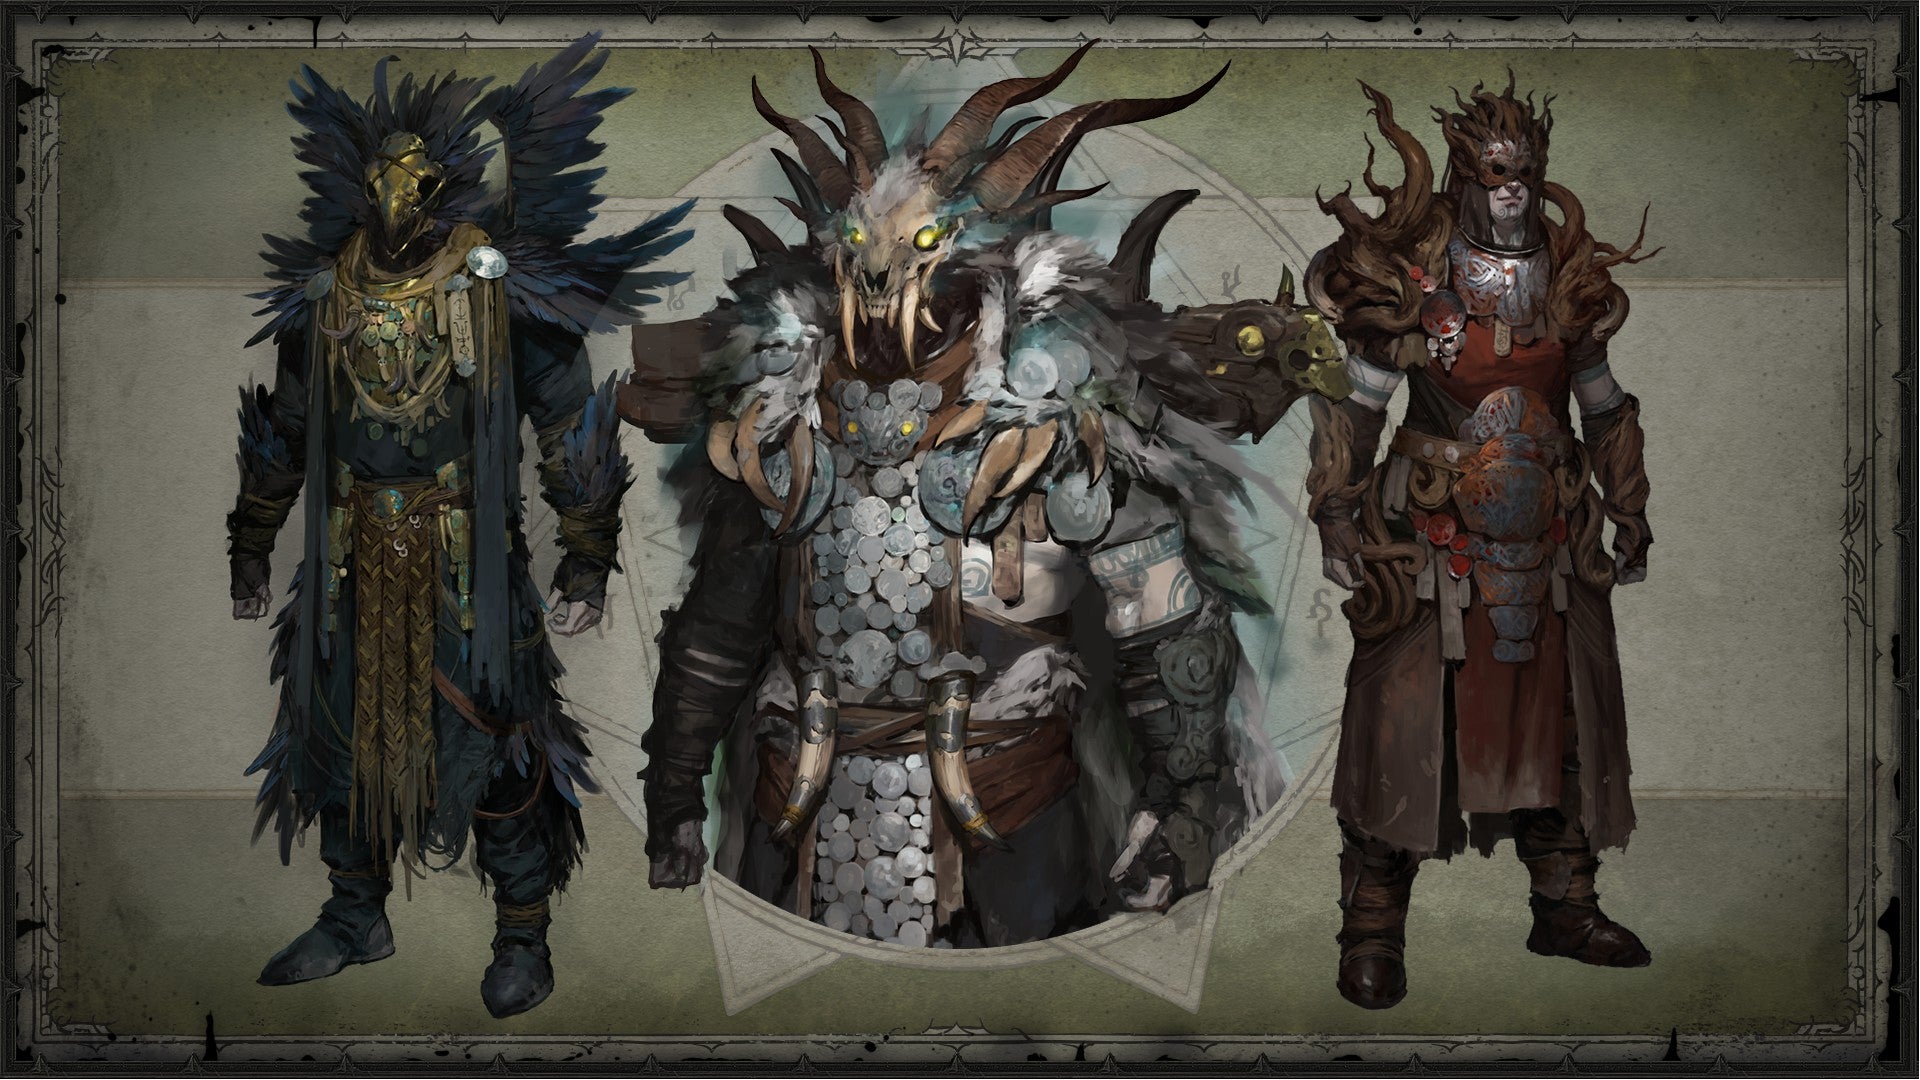 Diablo 4 promo art showing legendary gear for the Druid class.